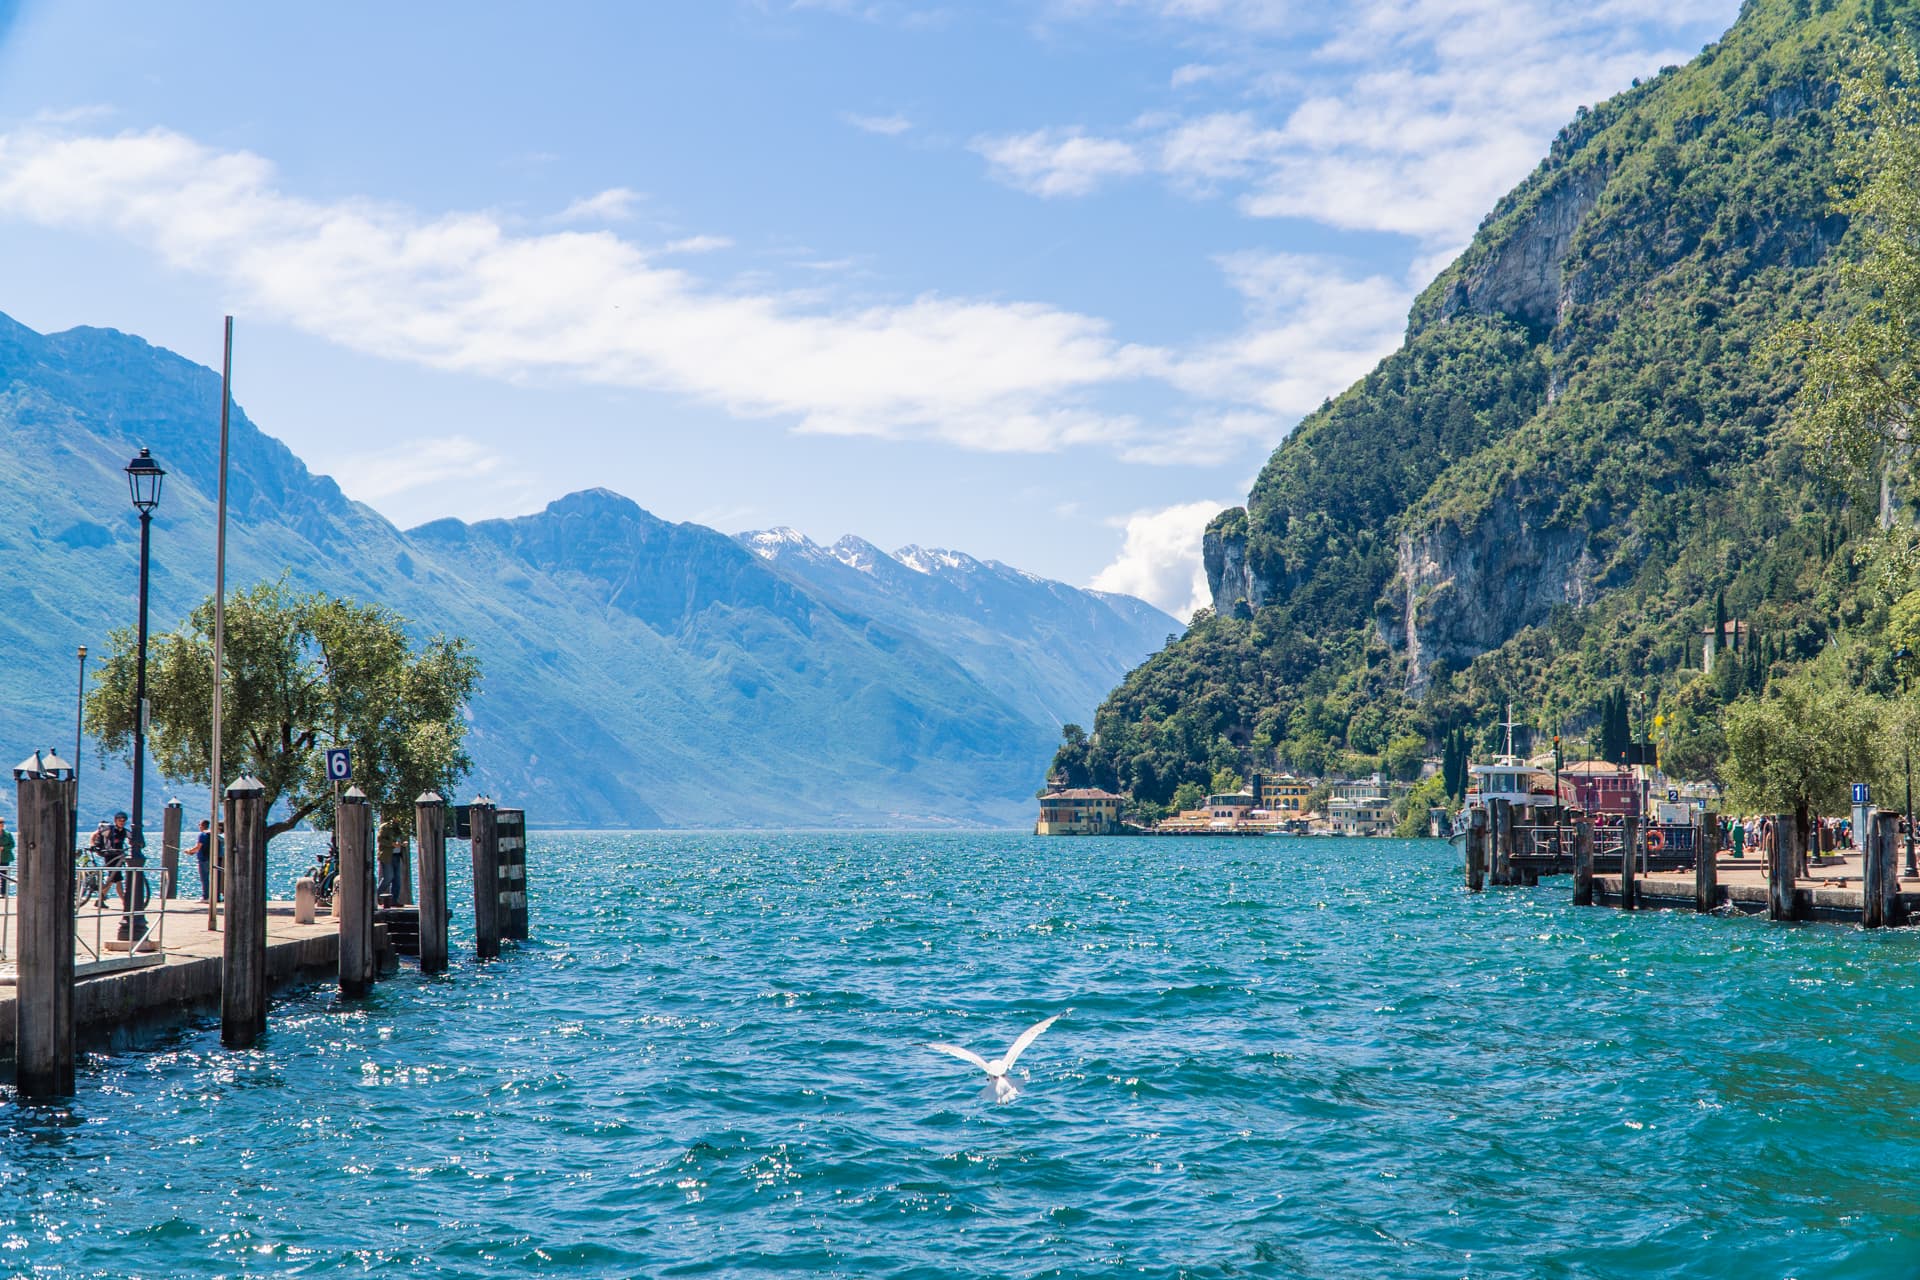 Urlop nad Jeziorem Garda | Jezioro Garda informacje praktyczne